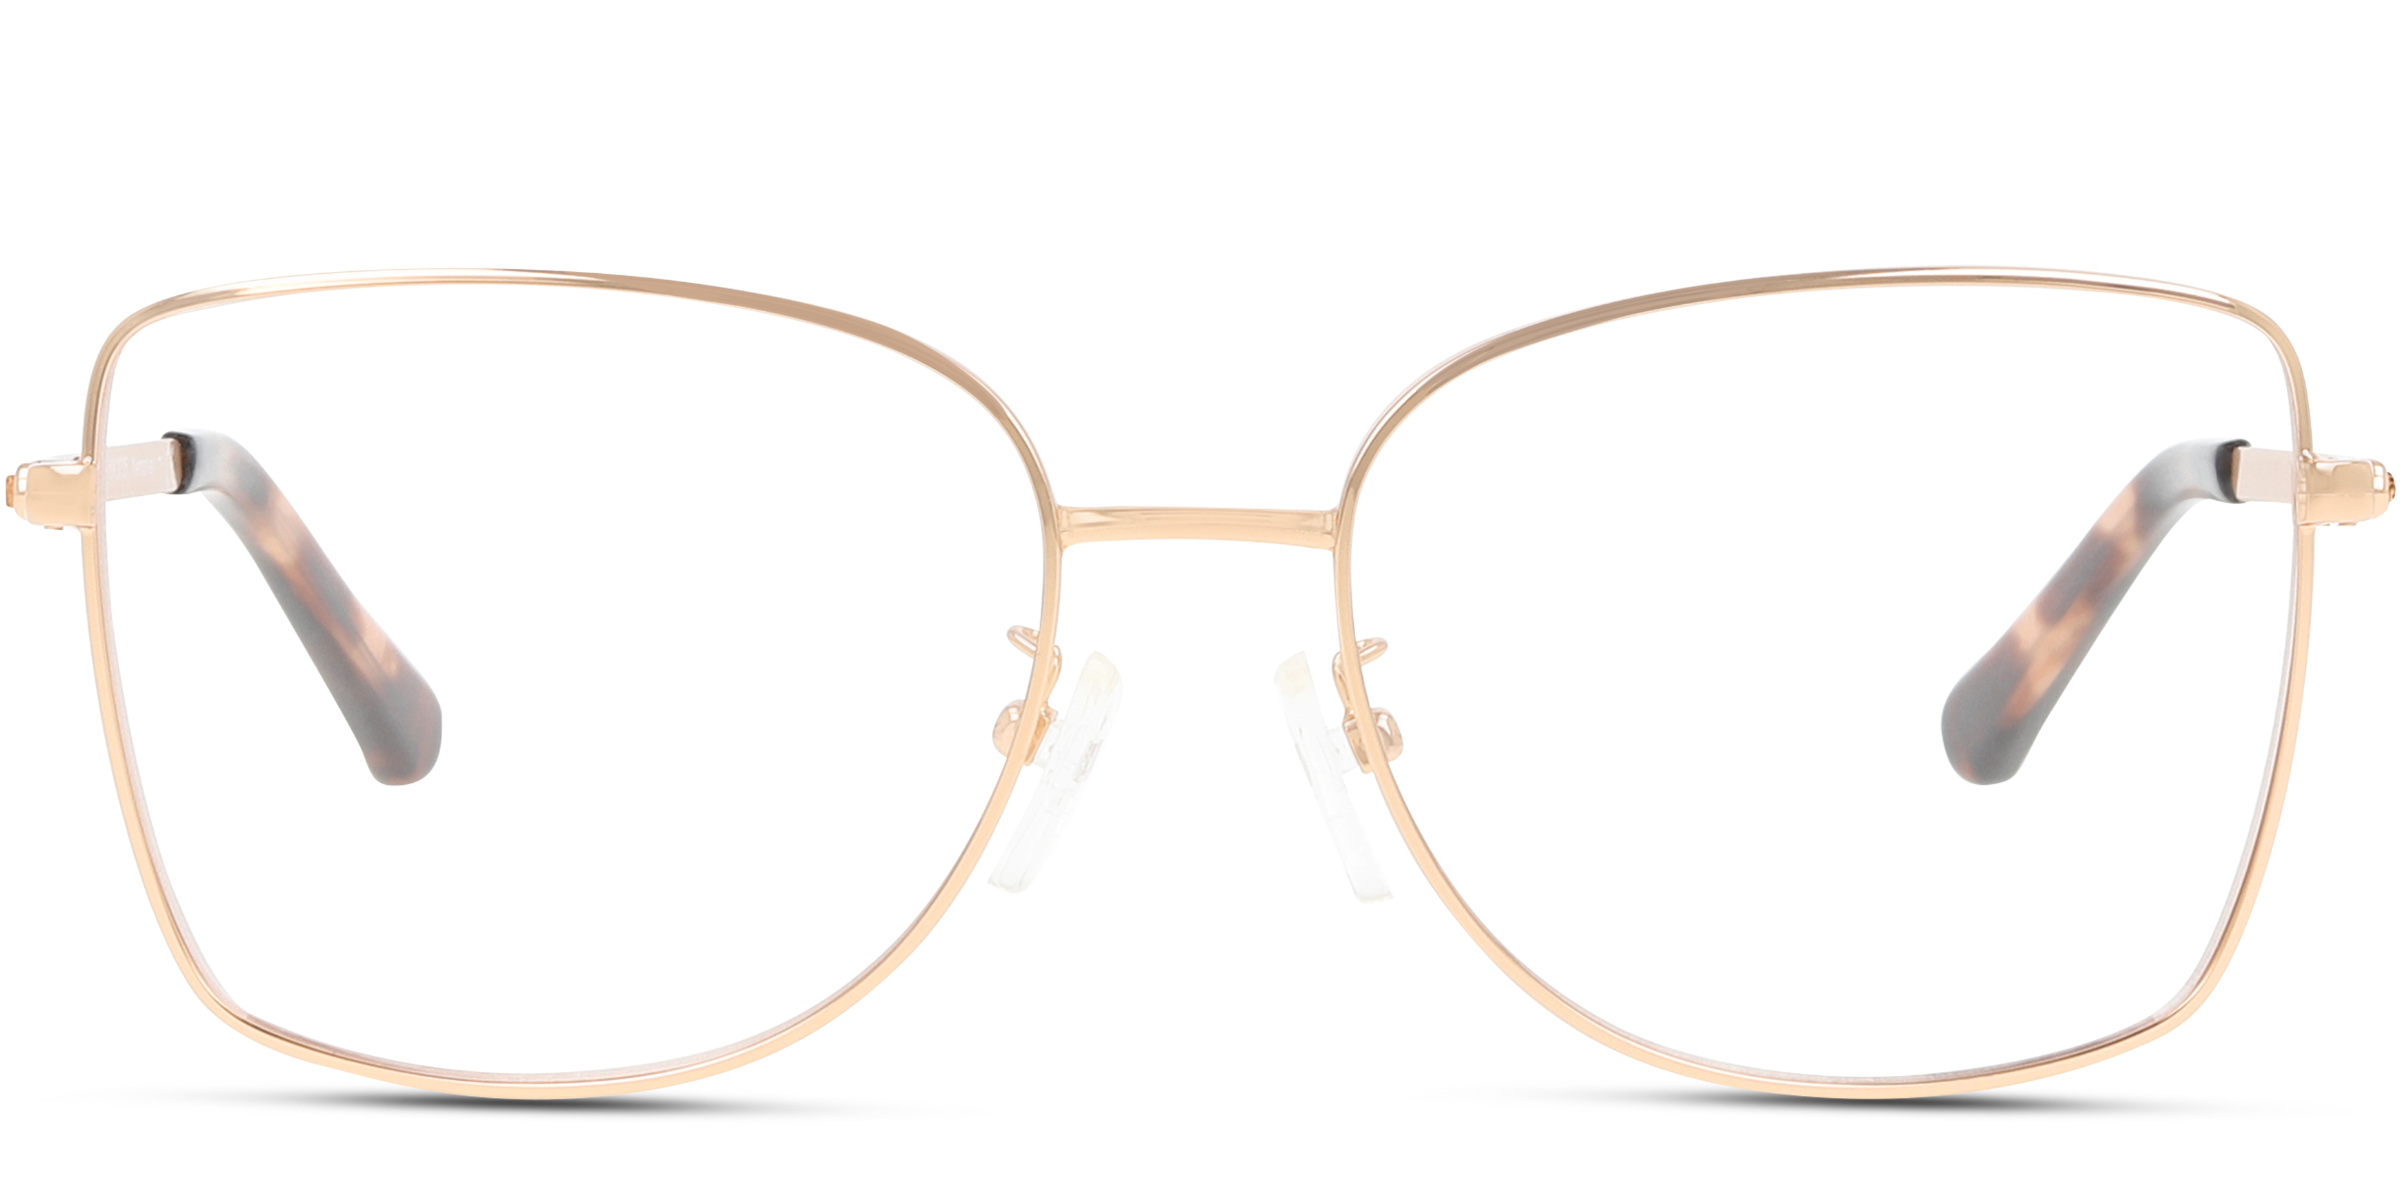 Michael Kors MK3035 MEMPHIS eyeglasses for women in Rose Gold